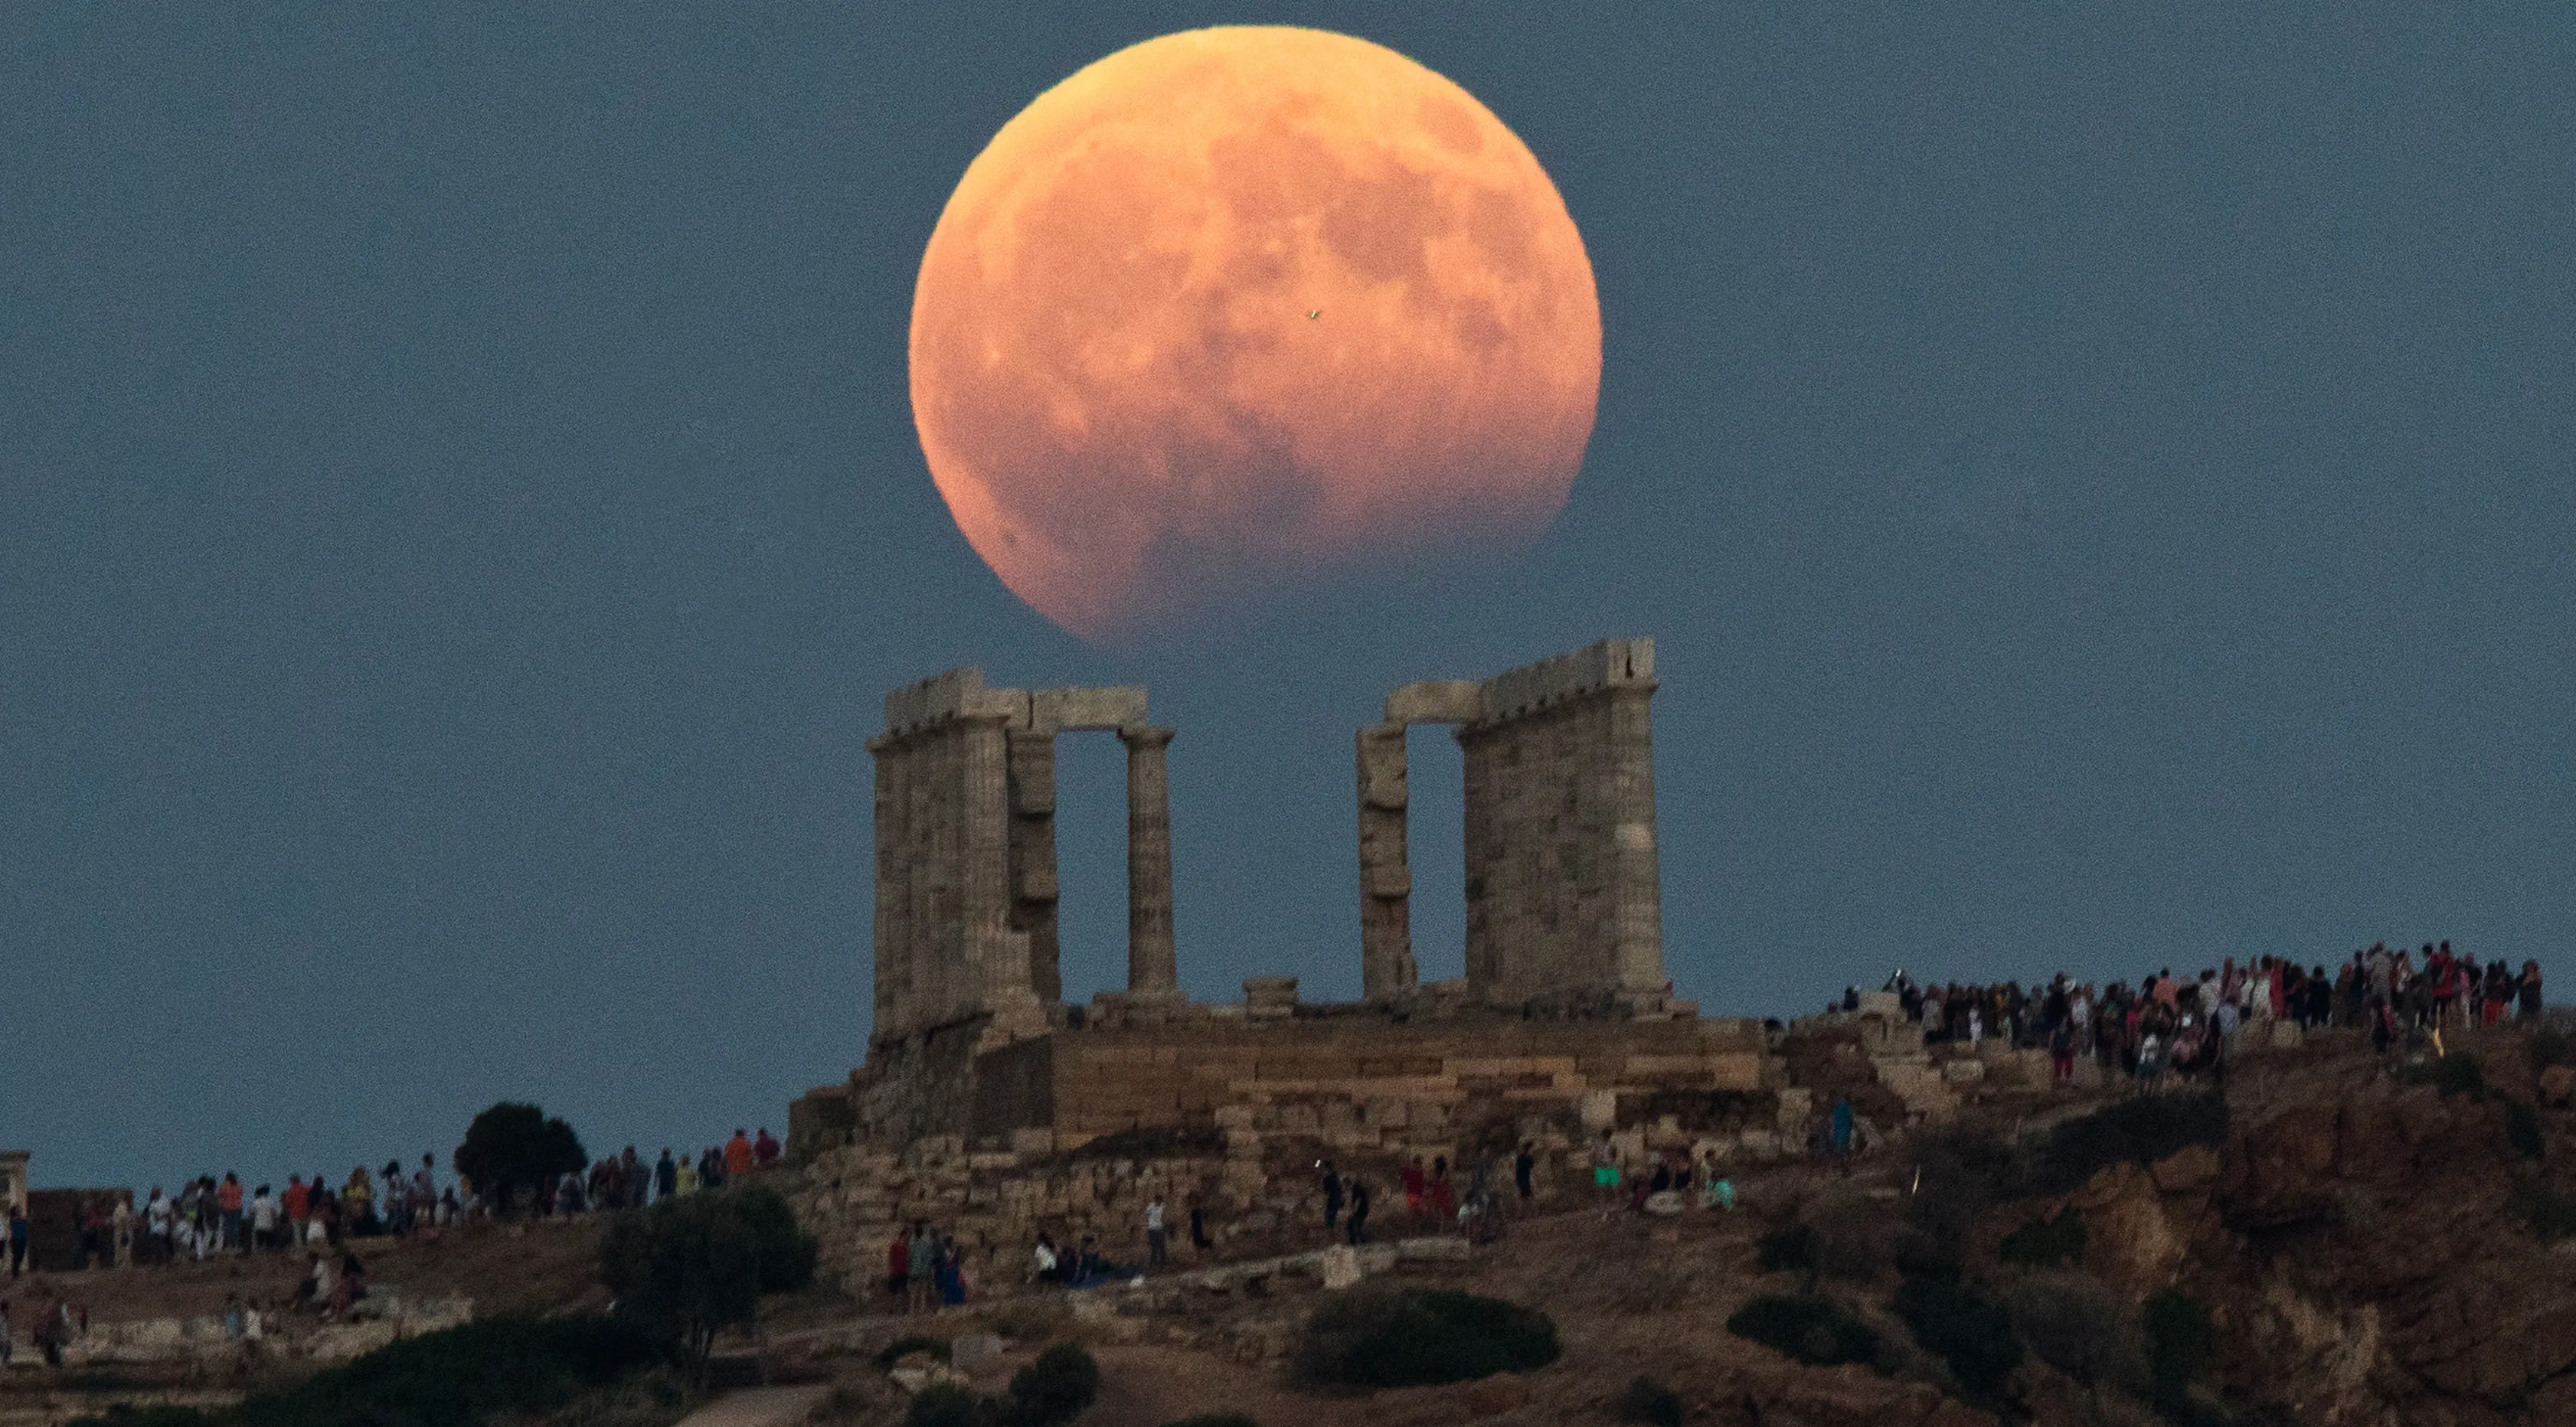 Gerhana bulan parsial terlihat di atas kuil Poseidon di Cape Sounion, Yunani, Senin (7/8). Gerhana bulan parsial terjadi ketika bumi bergerak di antara bulan dan matahari, tapi tidak persis dalam satu garis. (AP Photo/Petros Giannakouris)